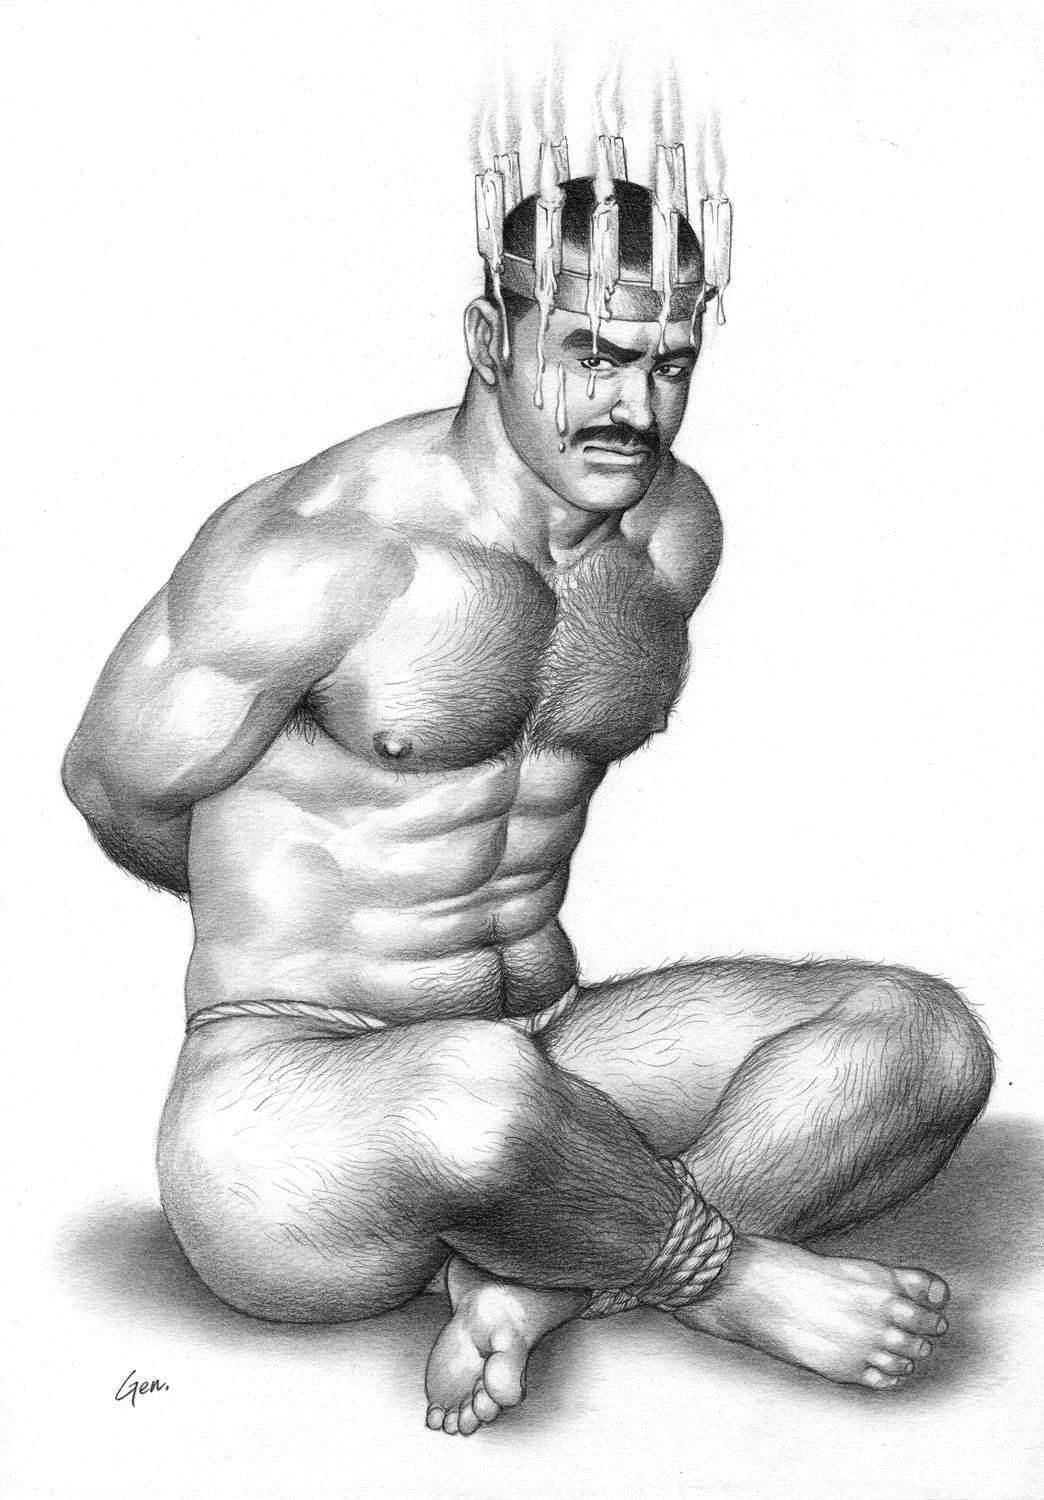 abnormal gay sex art drawings